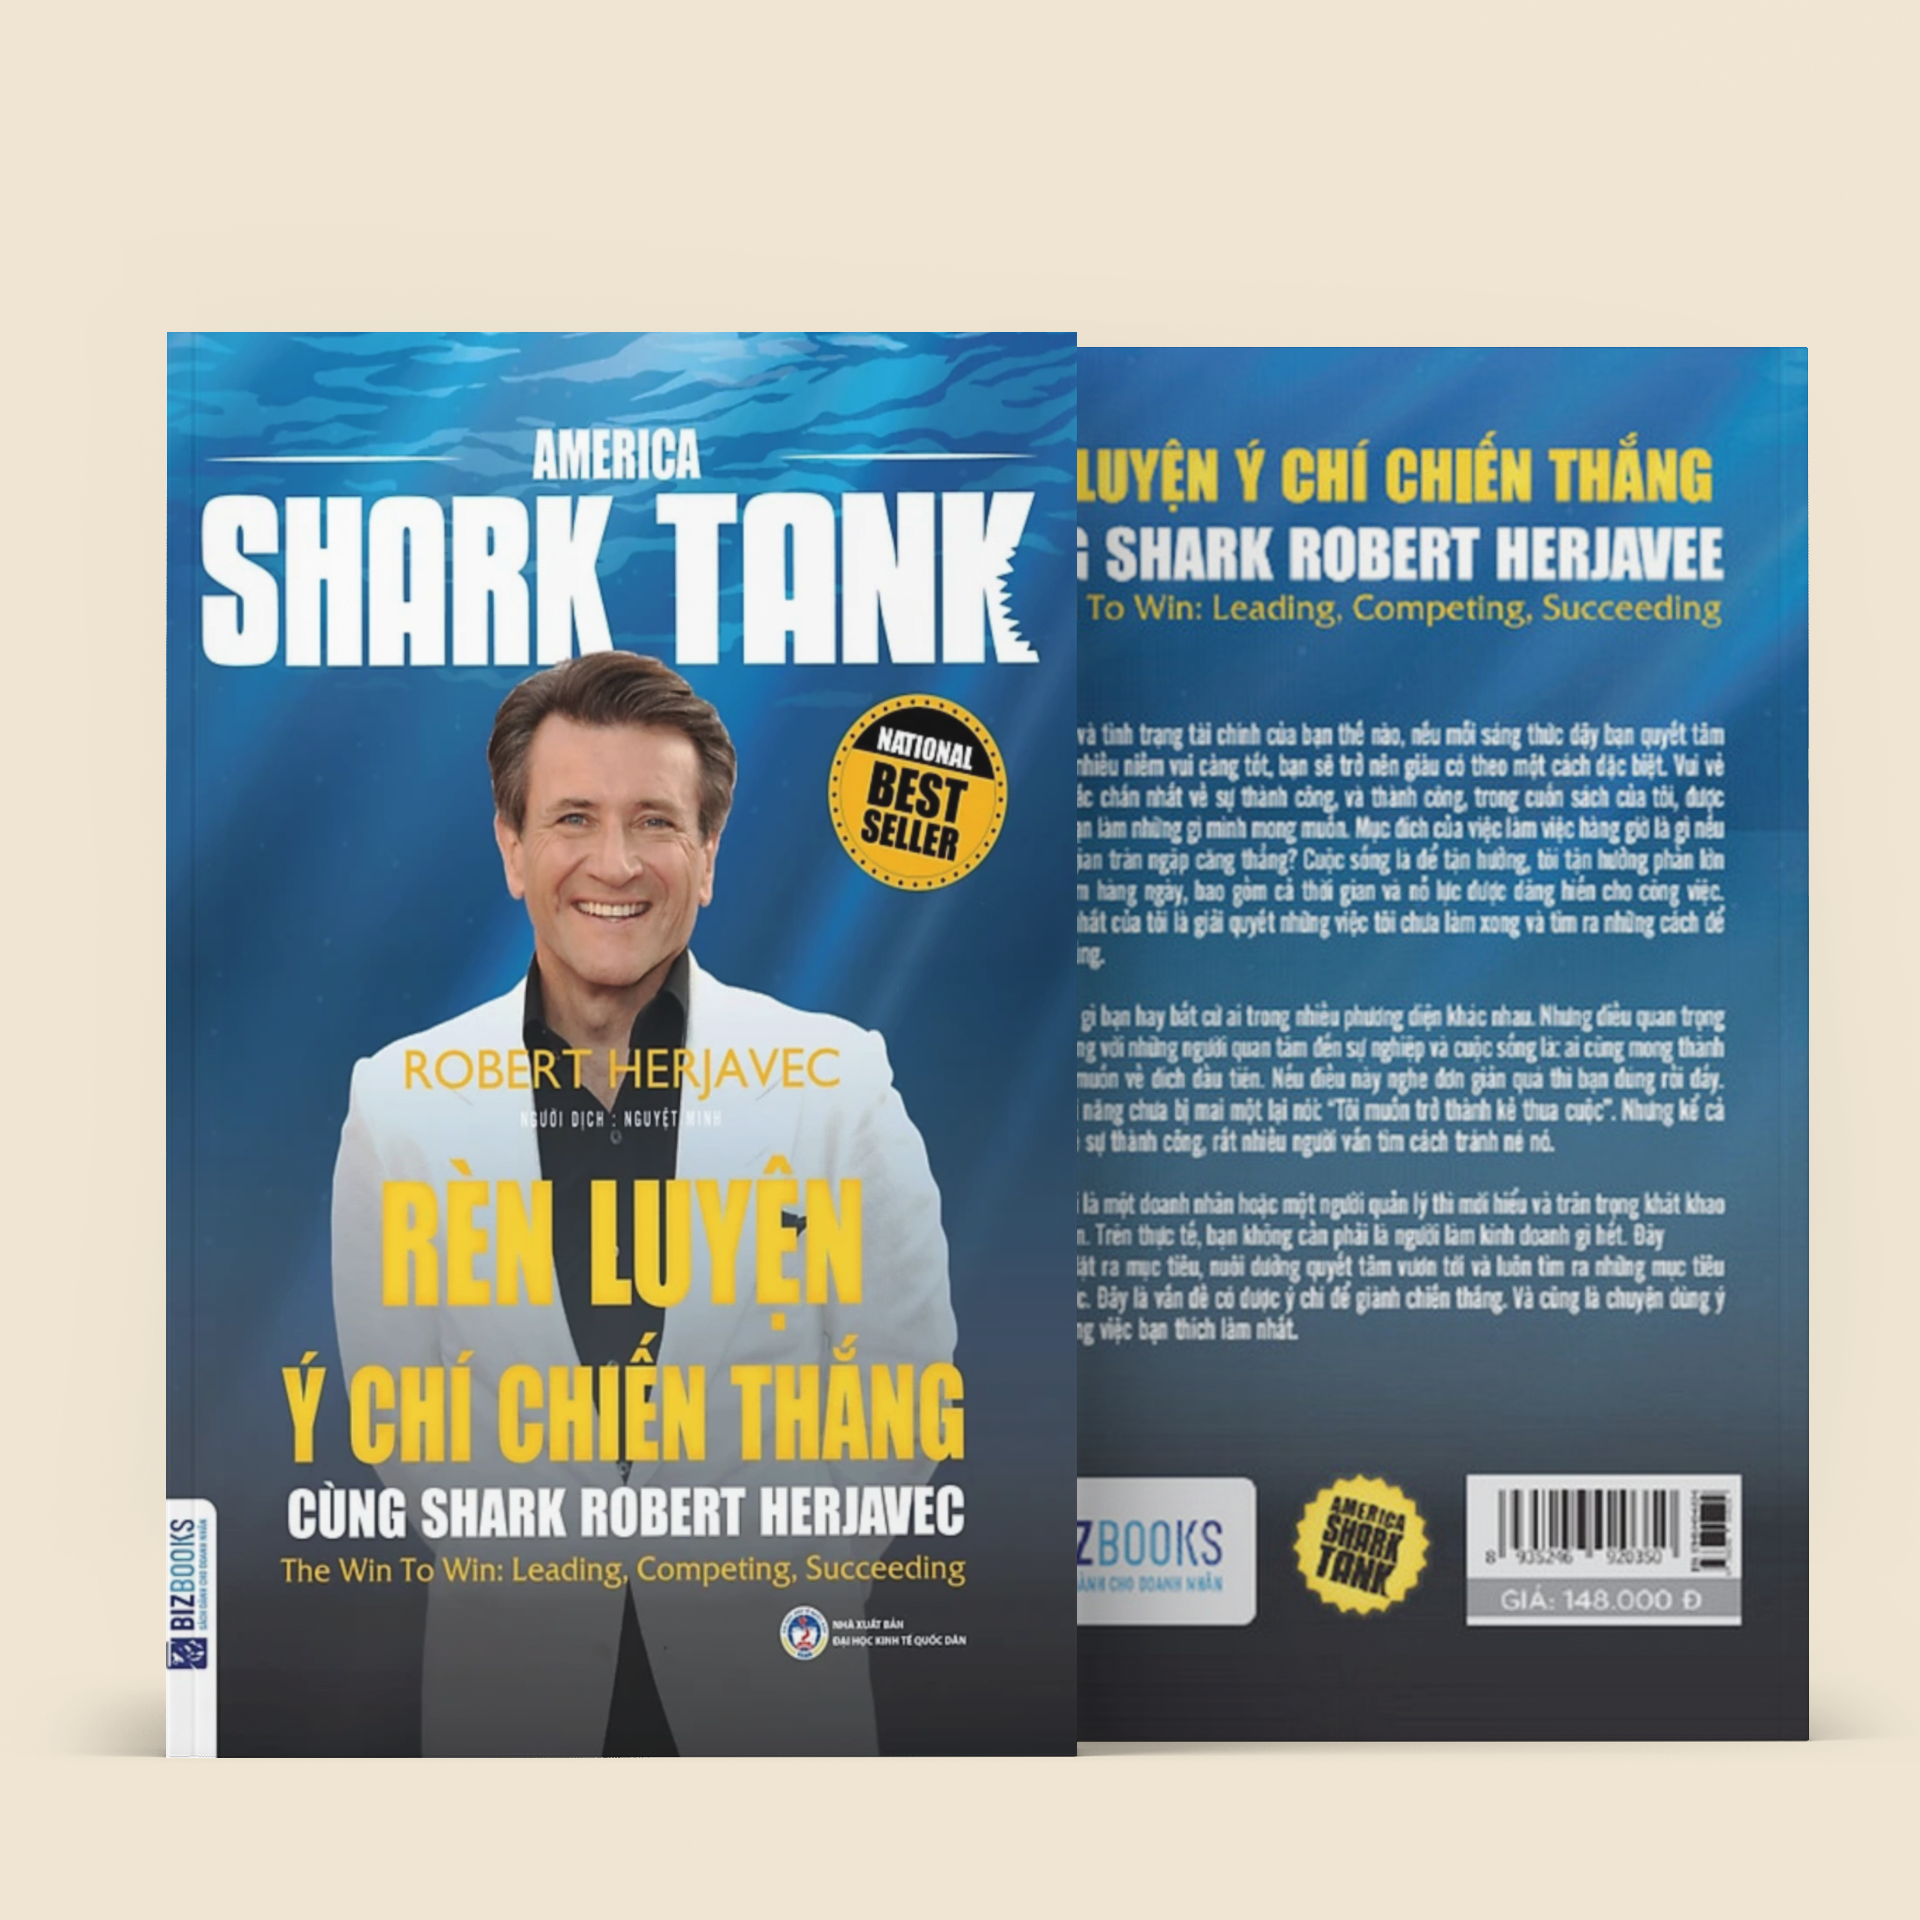 America Shark Tank: Rèn Luyện Ý Chí Chiến Thắng Cùng Shark Robert Herjavec